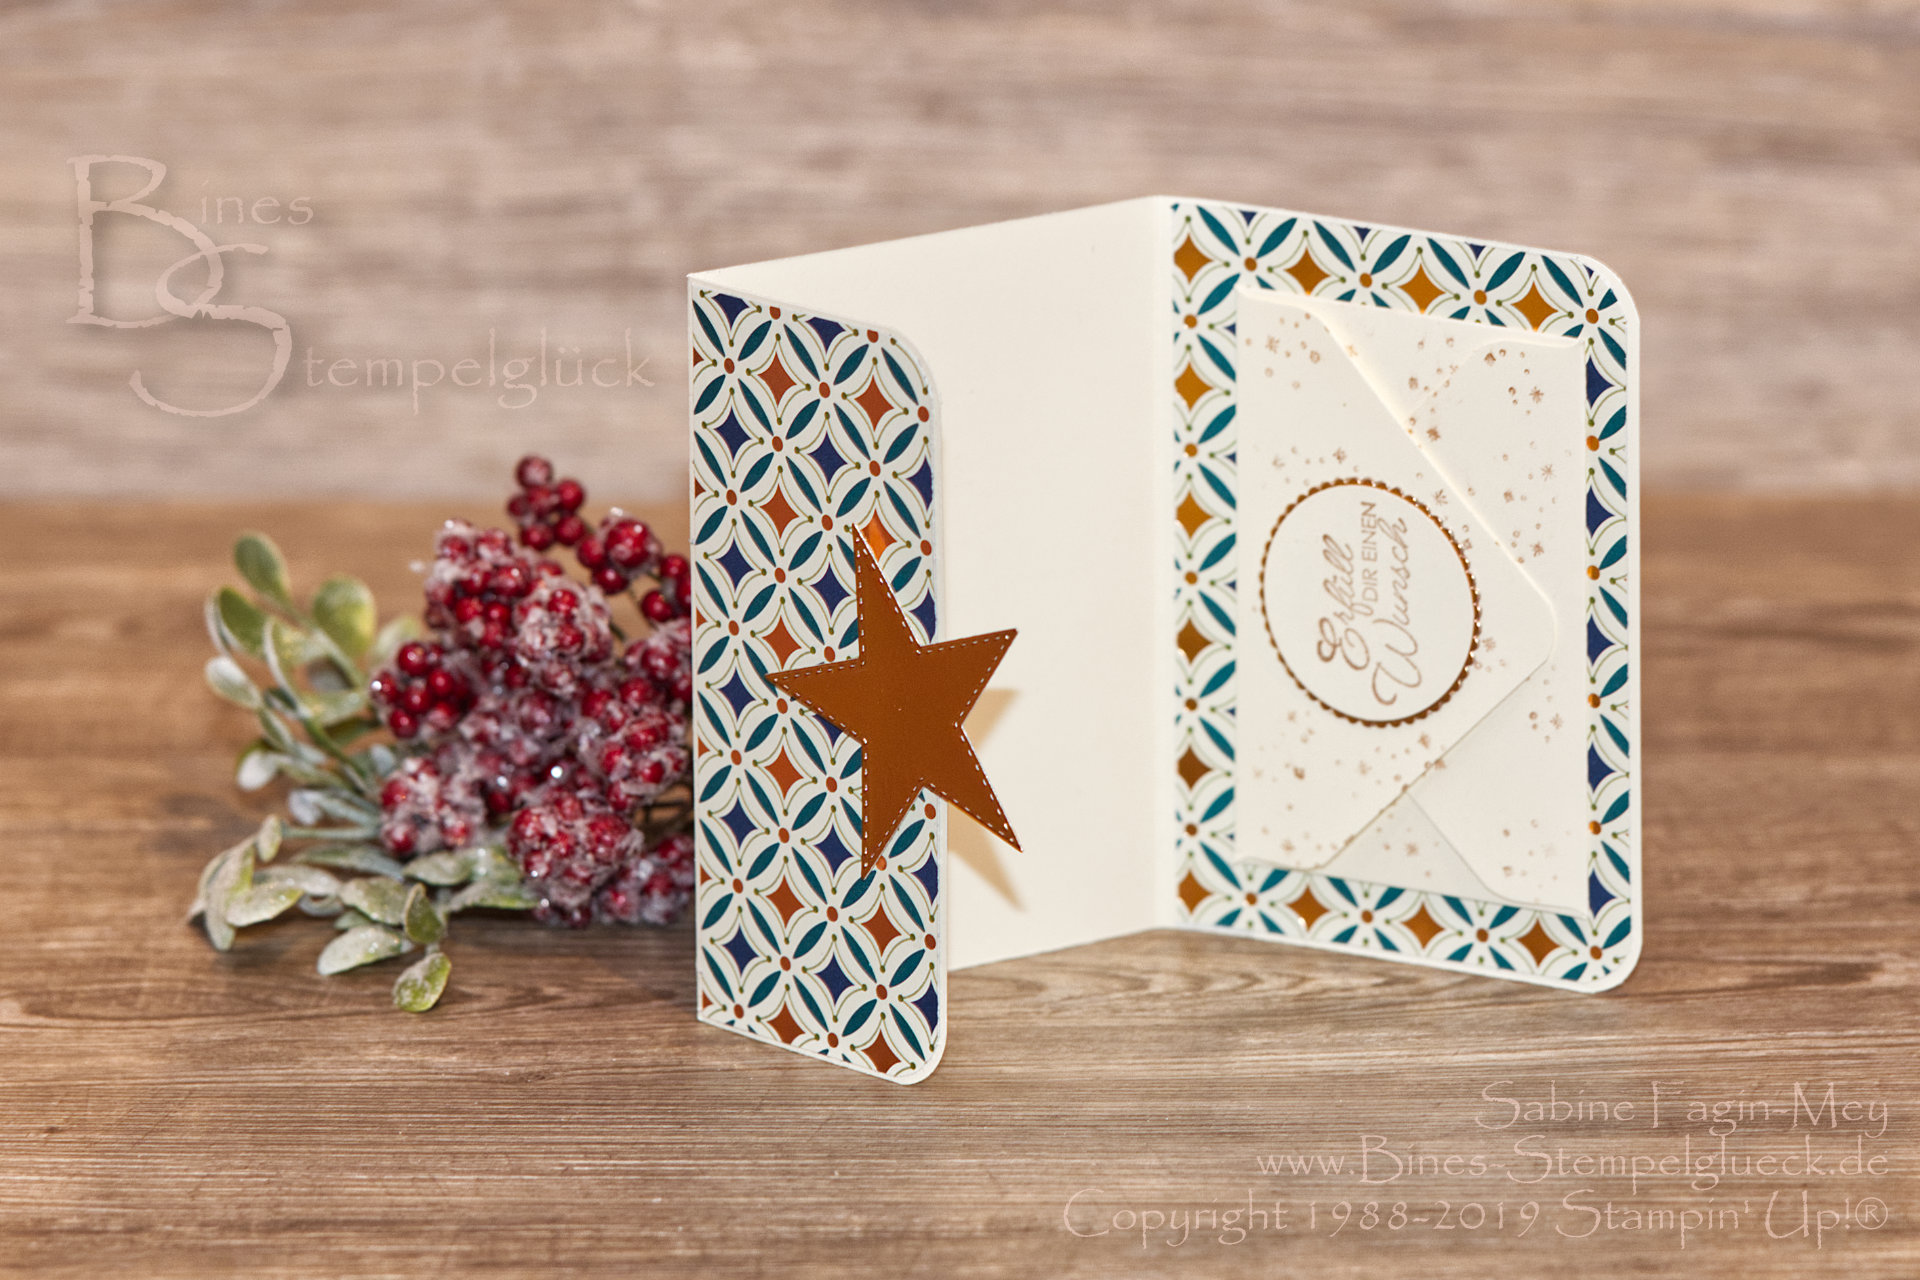 Weihnachtliche Gutscheinverpackung „Im schönsten Glanz“ mit Stampin' Up! Produkten